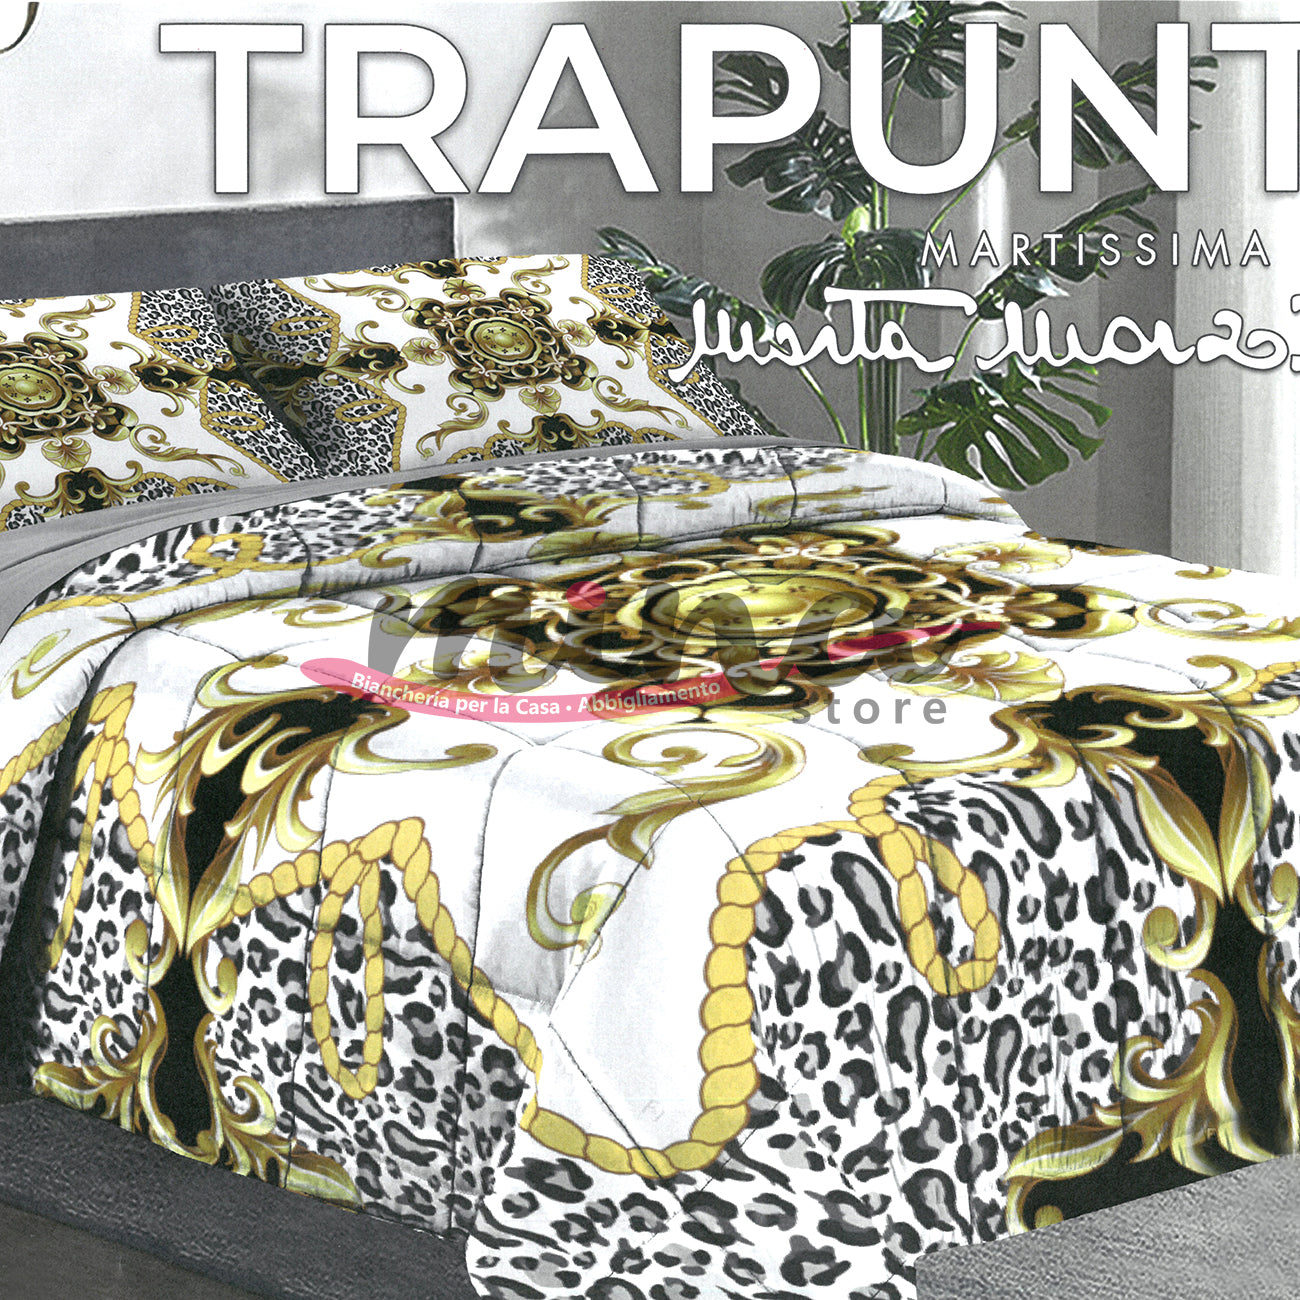 Trapunta invernale Marta Marzotto 320gr Matrimoniale 100% Made in Italy Stampa Digitale 3D Qualità Premium Barocco Oro Nero Leopardato 1604